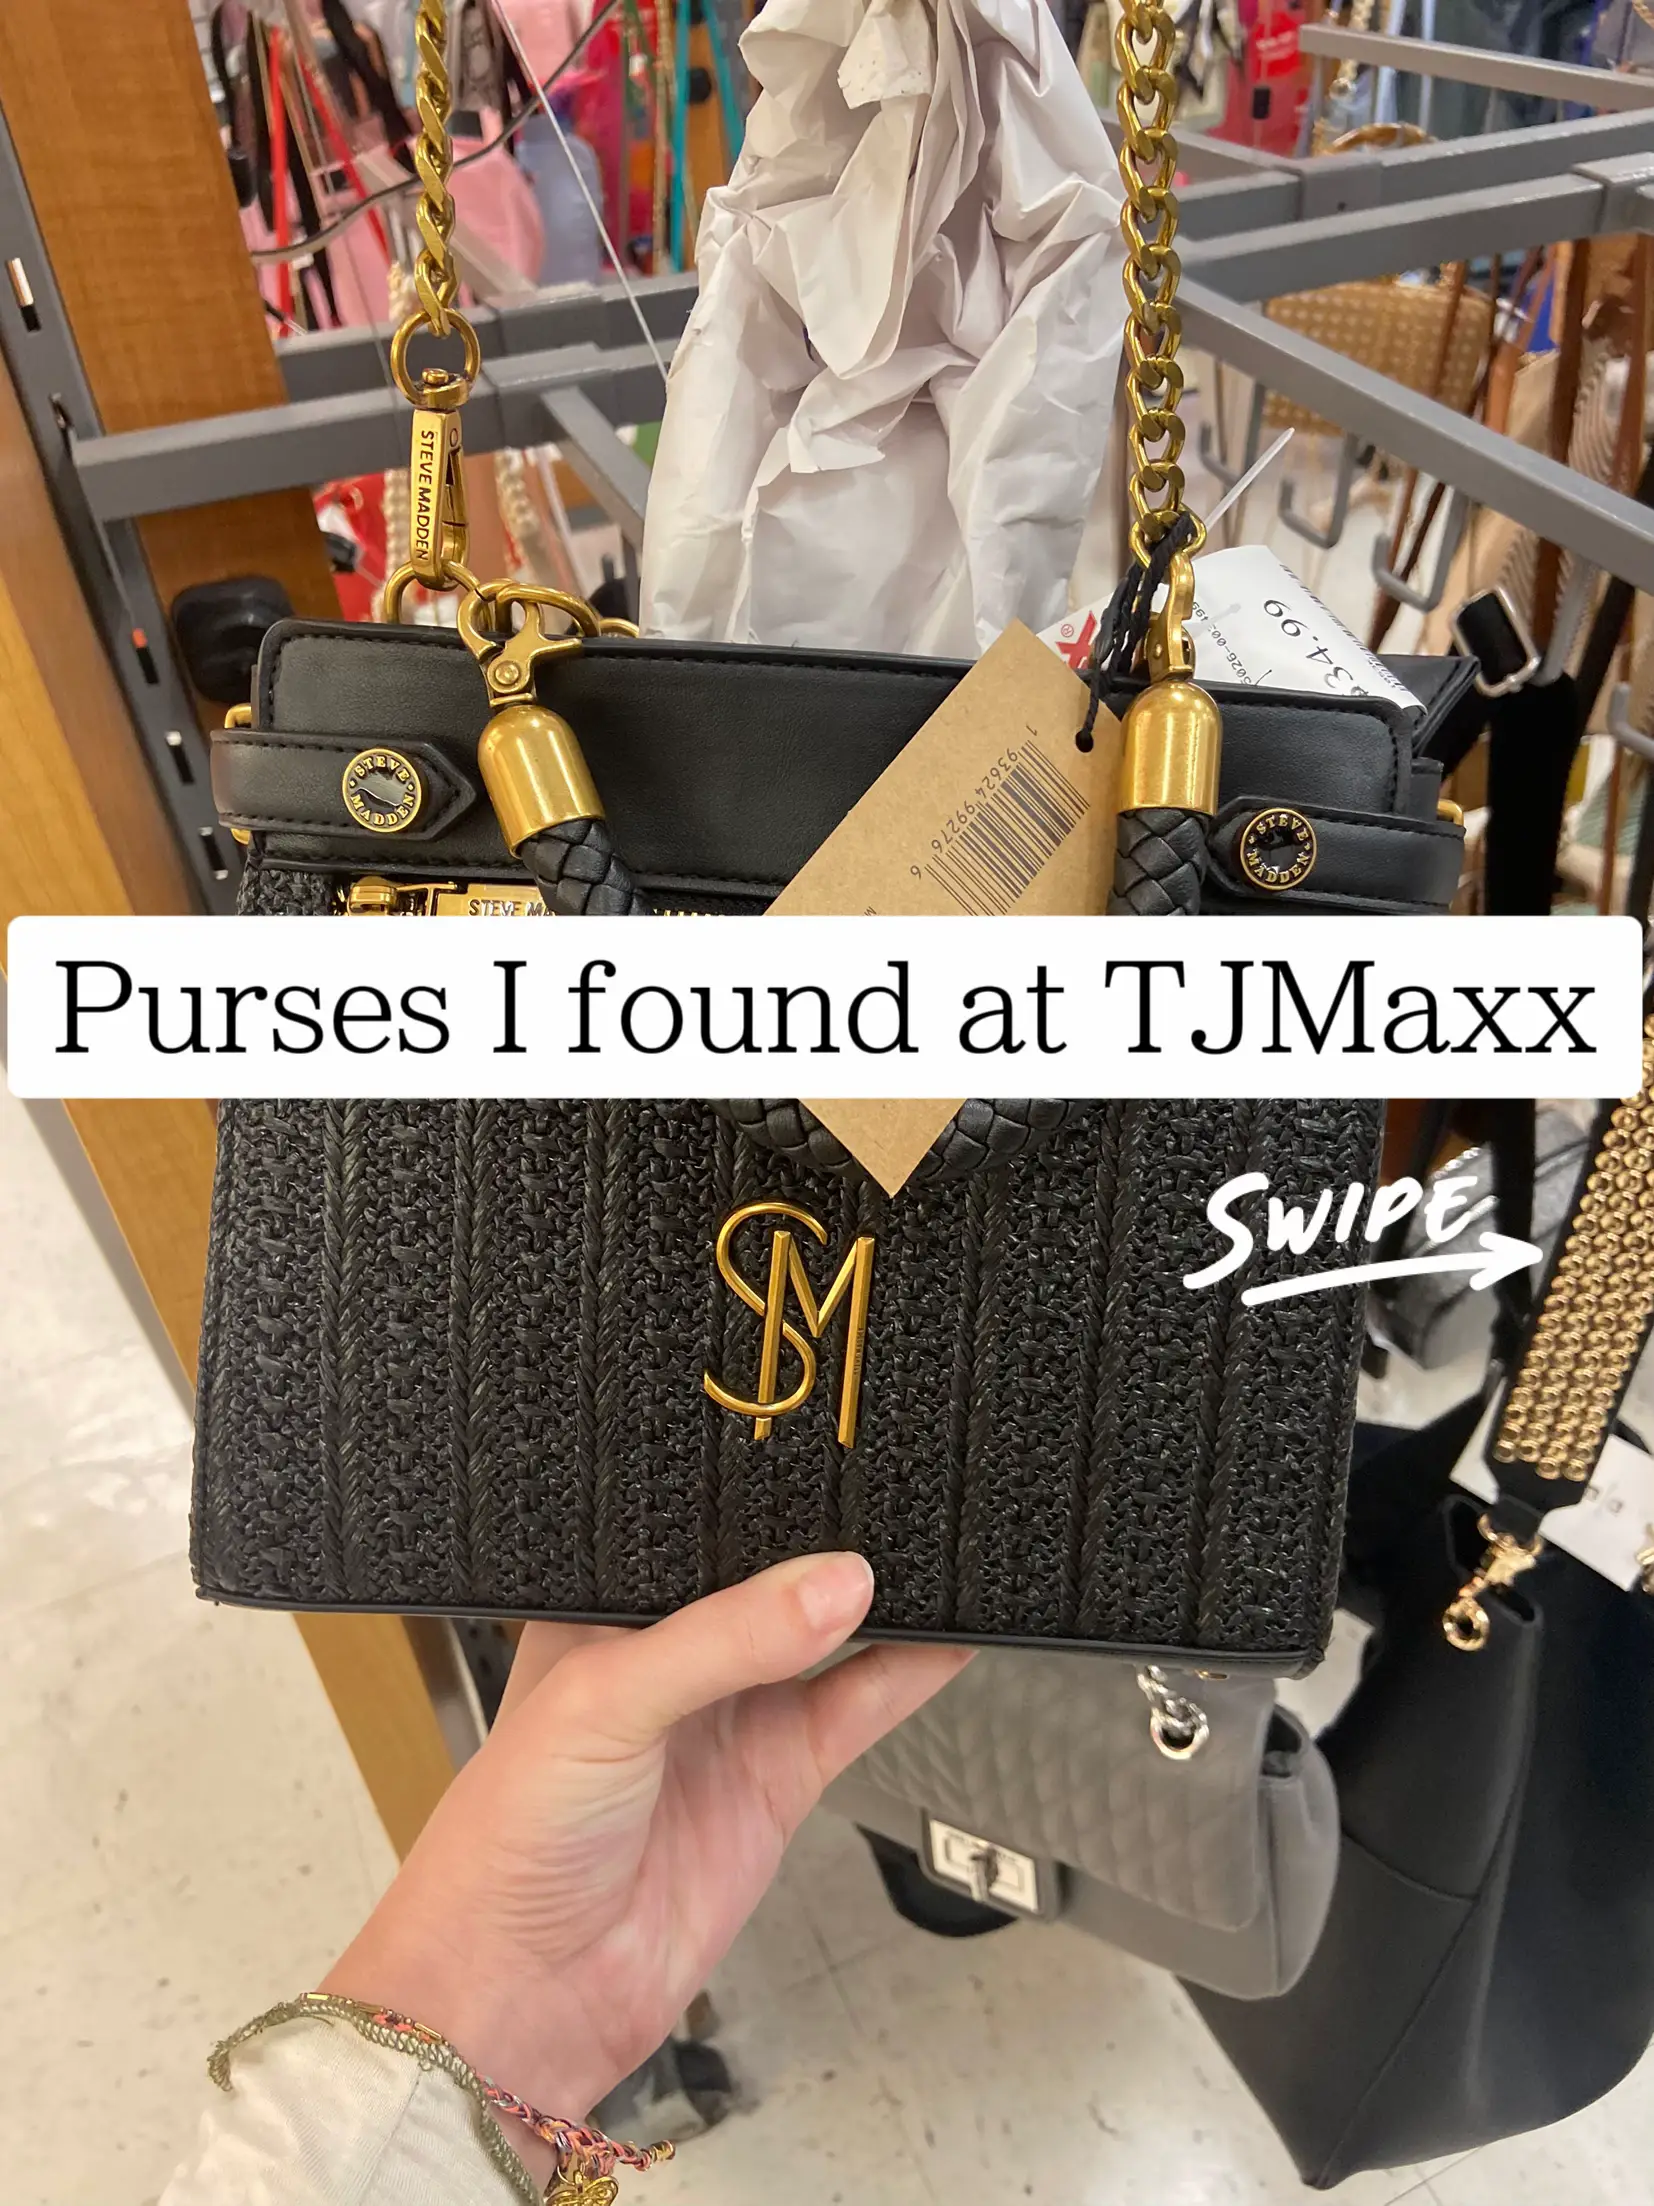 New Steve Madden purse found at TJ Maxx!